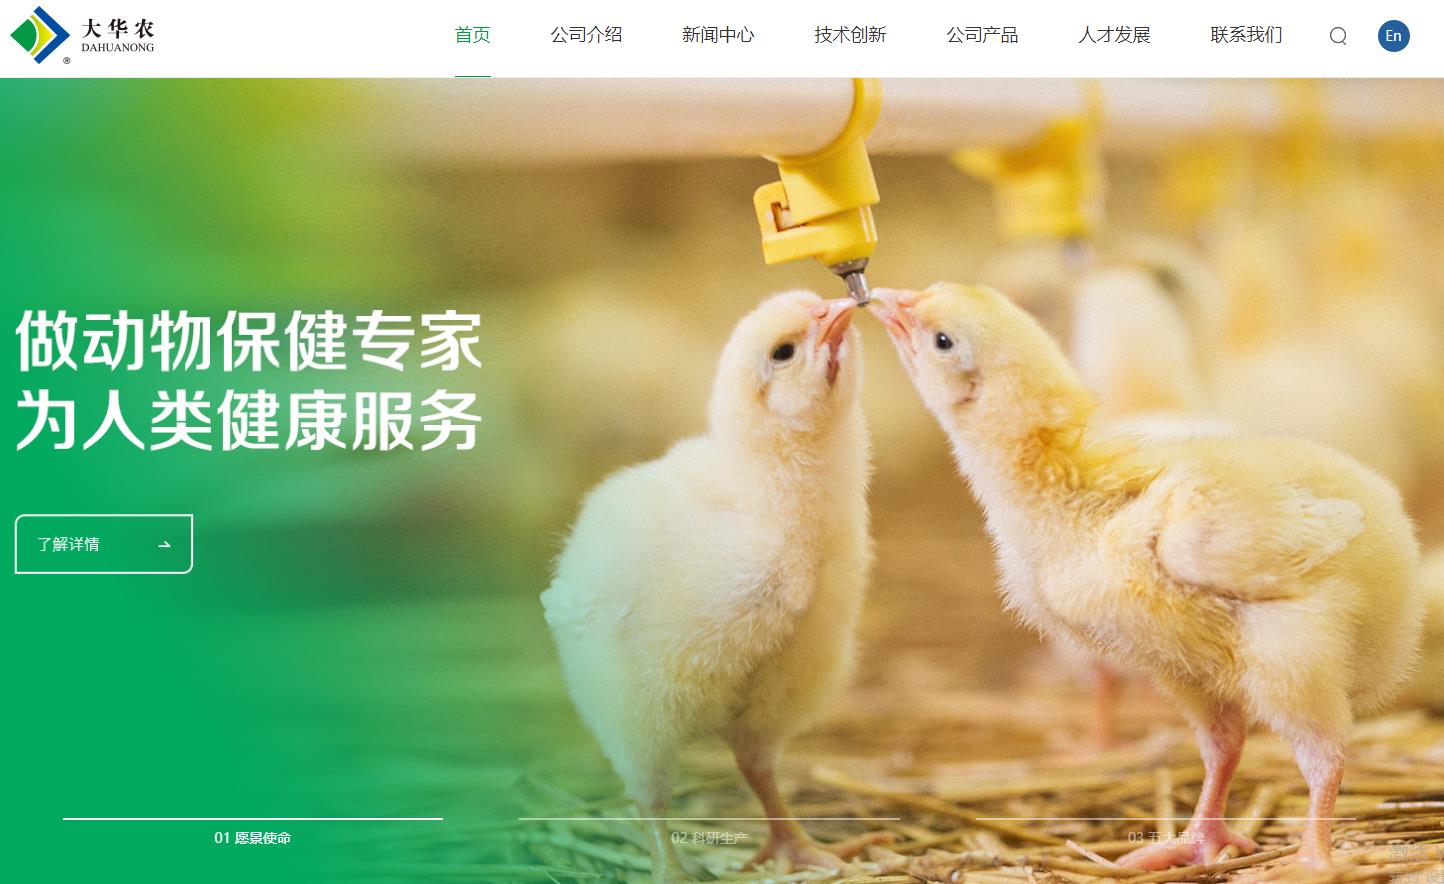 广东温氏大华农生物科技有限公司天然植物饲料添加剂生产建设项目总投资 6868.0万元